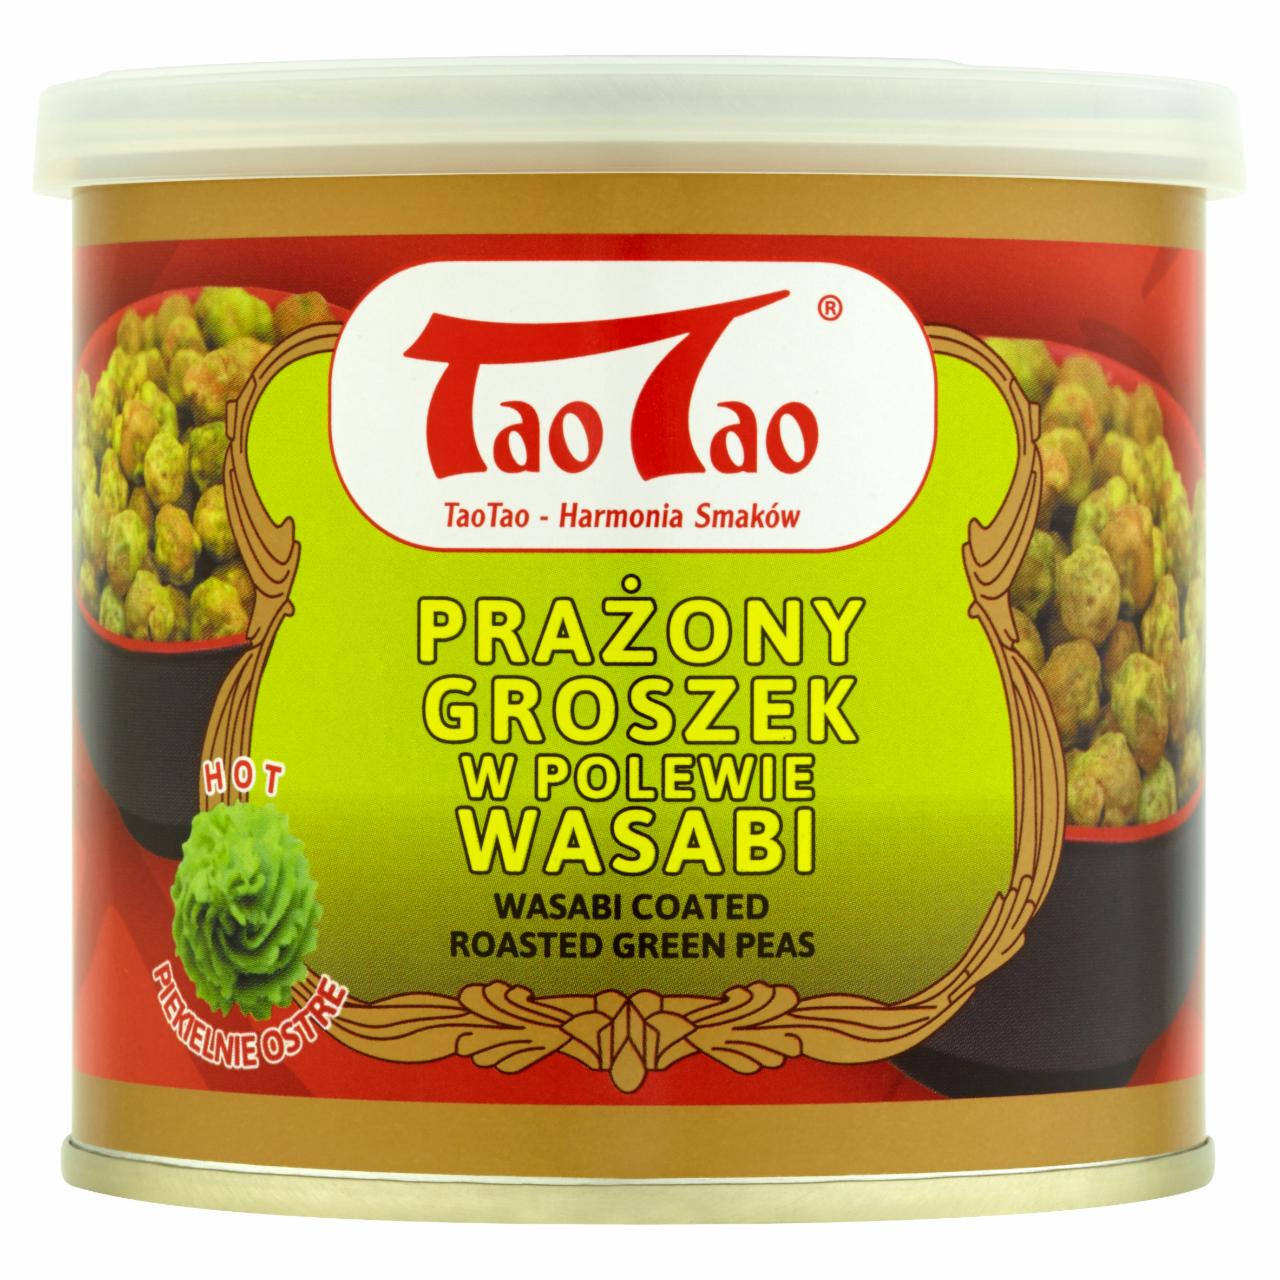 Zdjęcia - Tao Tao Prażony groszek w polewie wasabi 140 g